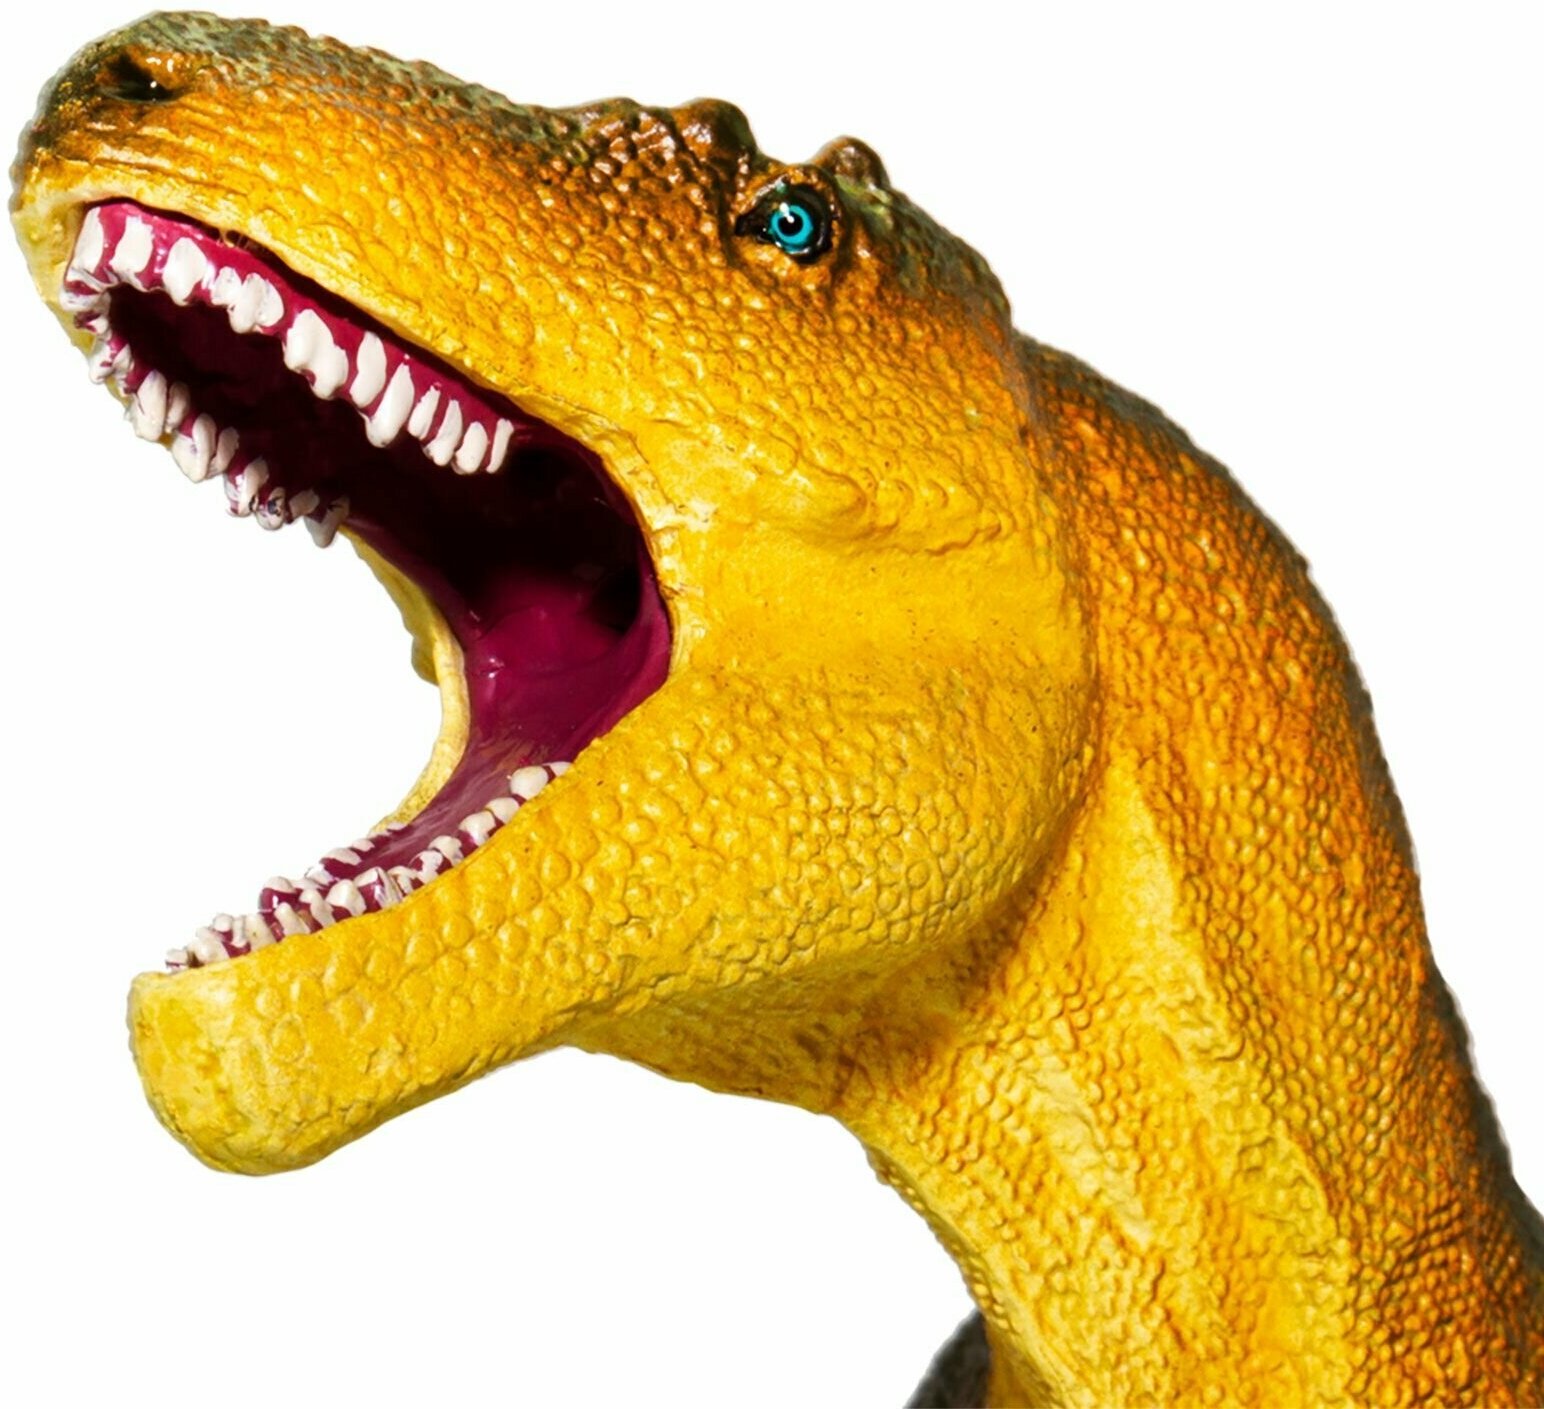 Фигурка динозавра Safari ltd Дасплетозавр, для детей, игрушка коллекционная, 100572